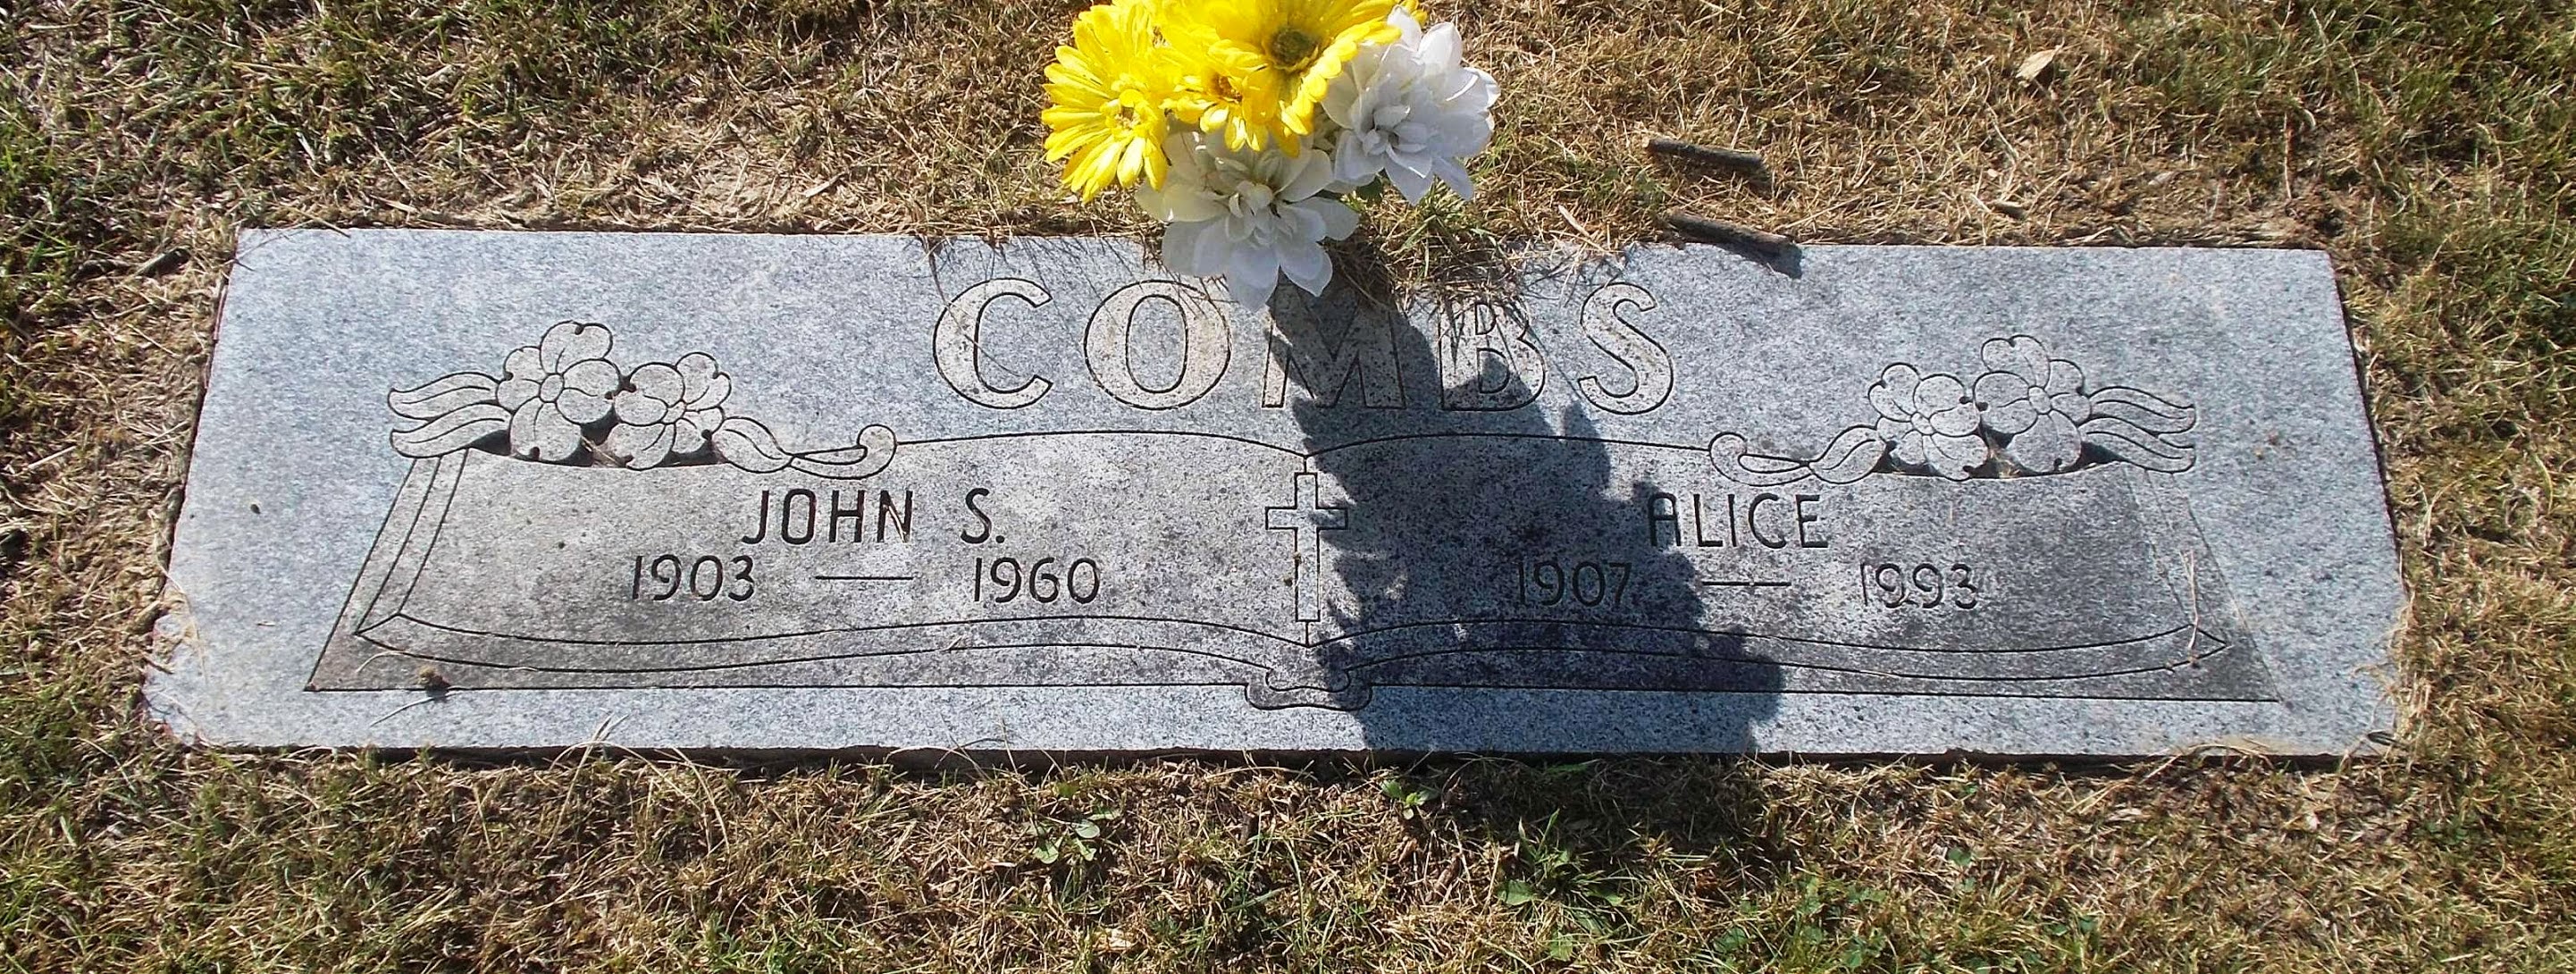 John S Combs